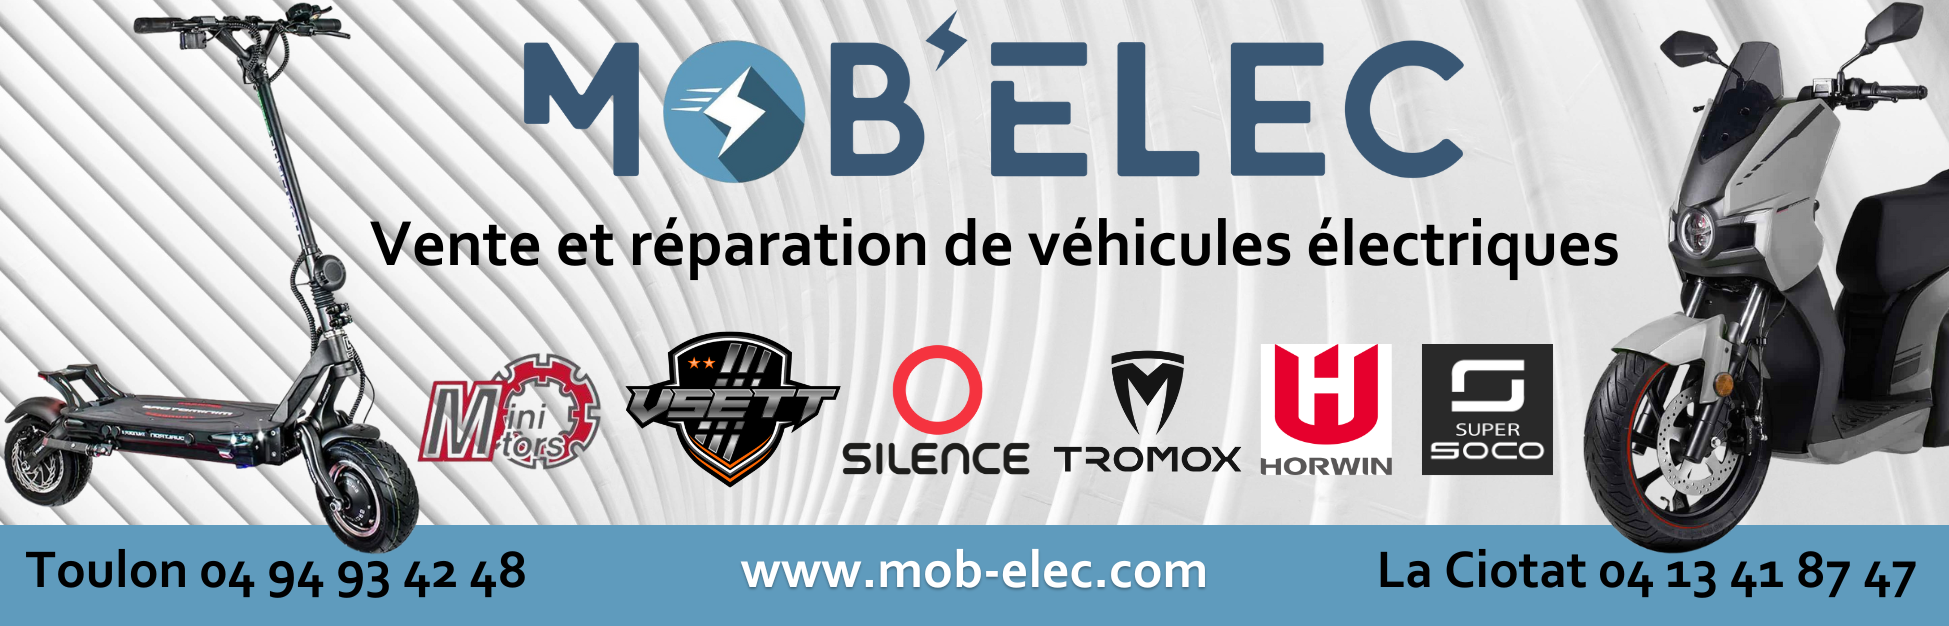 Mob’Elec : le spécialiste de la mobilité électrique à Toulon et La Ciotat